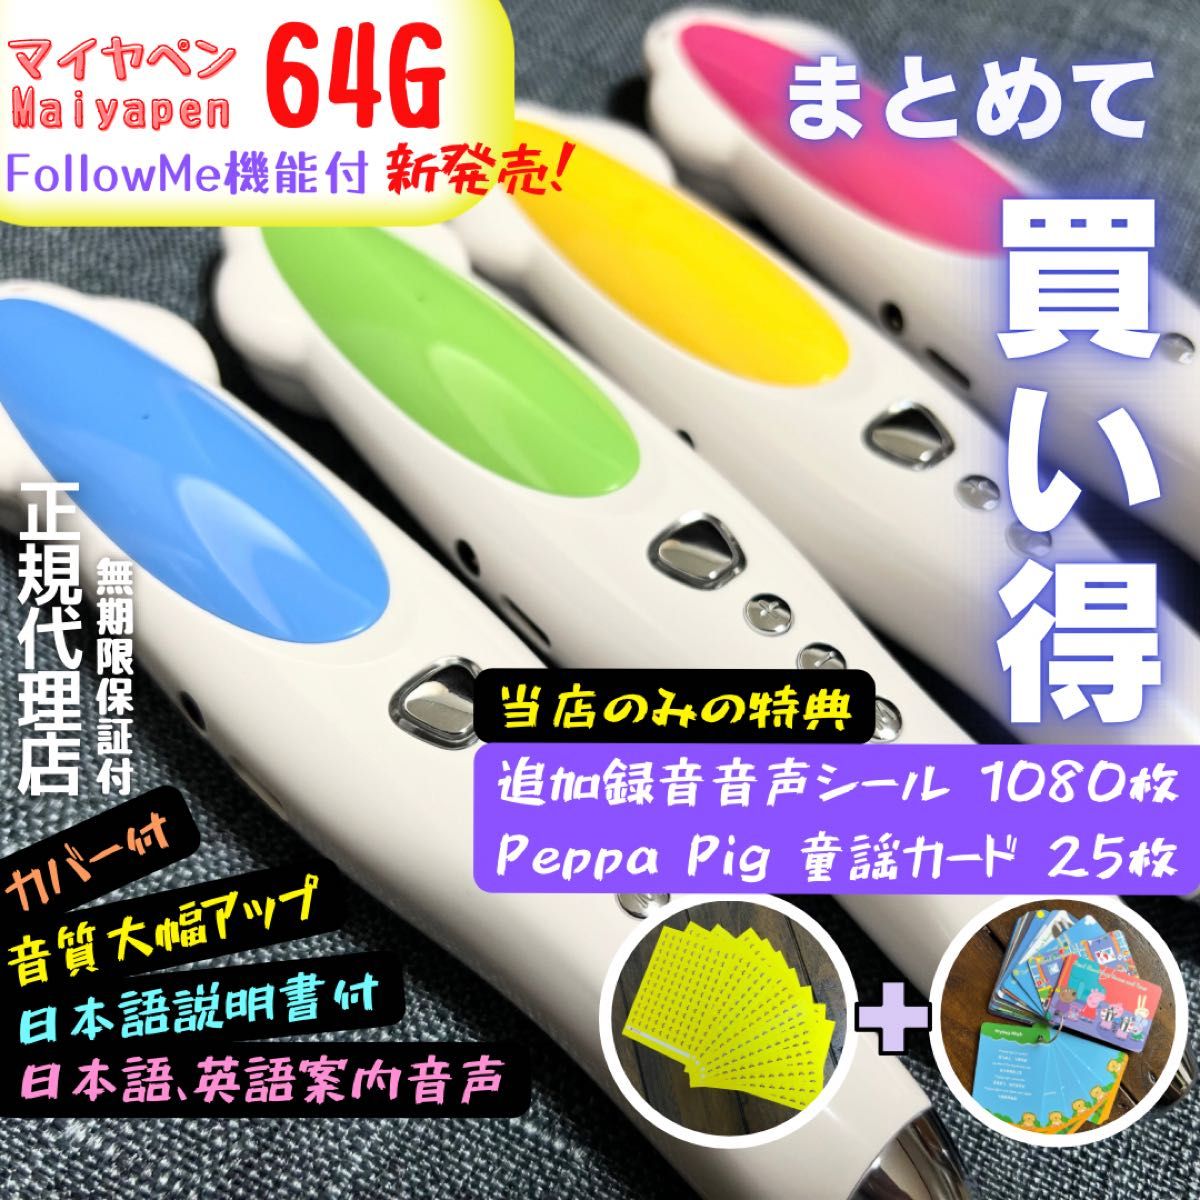 新発売 64Gマイヤペン 海外向け仕様 音質大幅アップ 日本語英語二つの